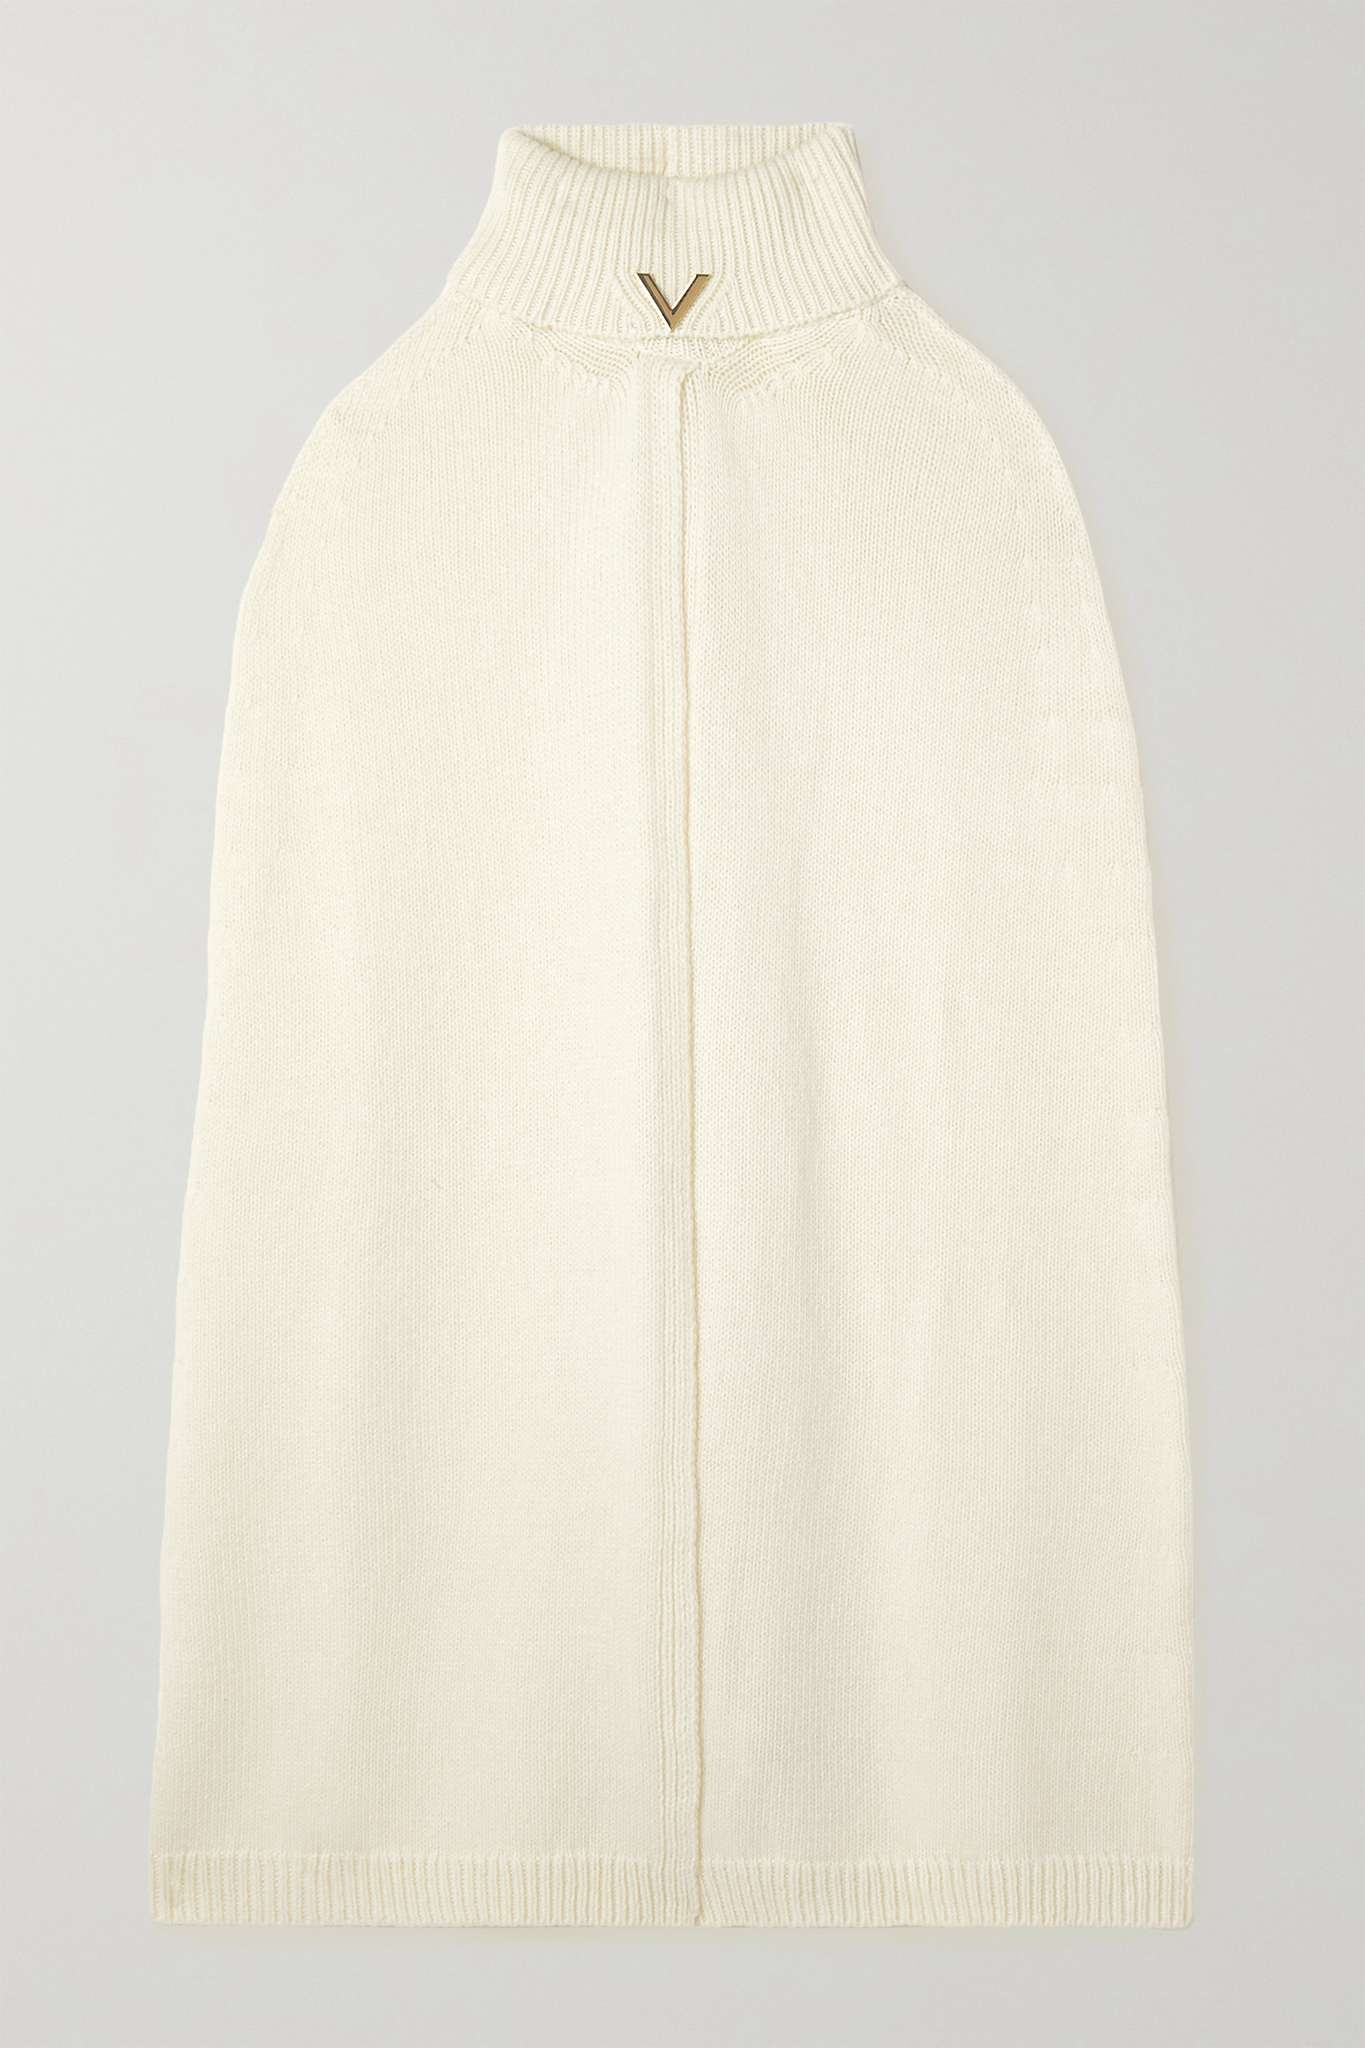 Valentino Garavani embellished wool and cashmere-blend turtleneck cape - 1